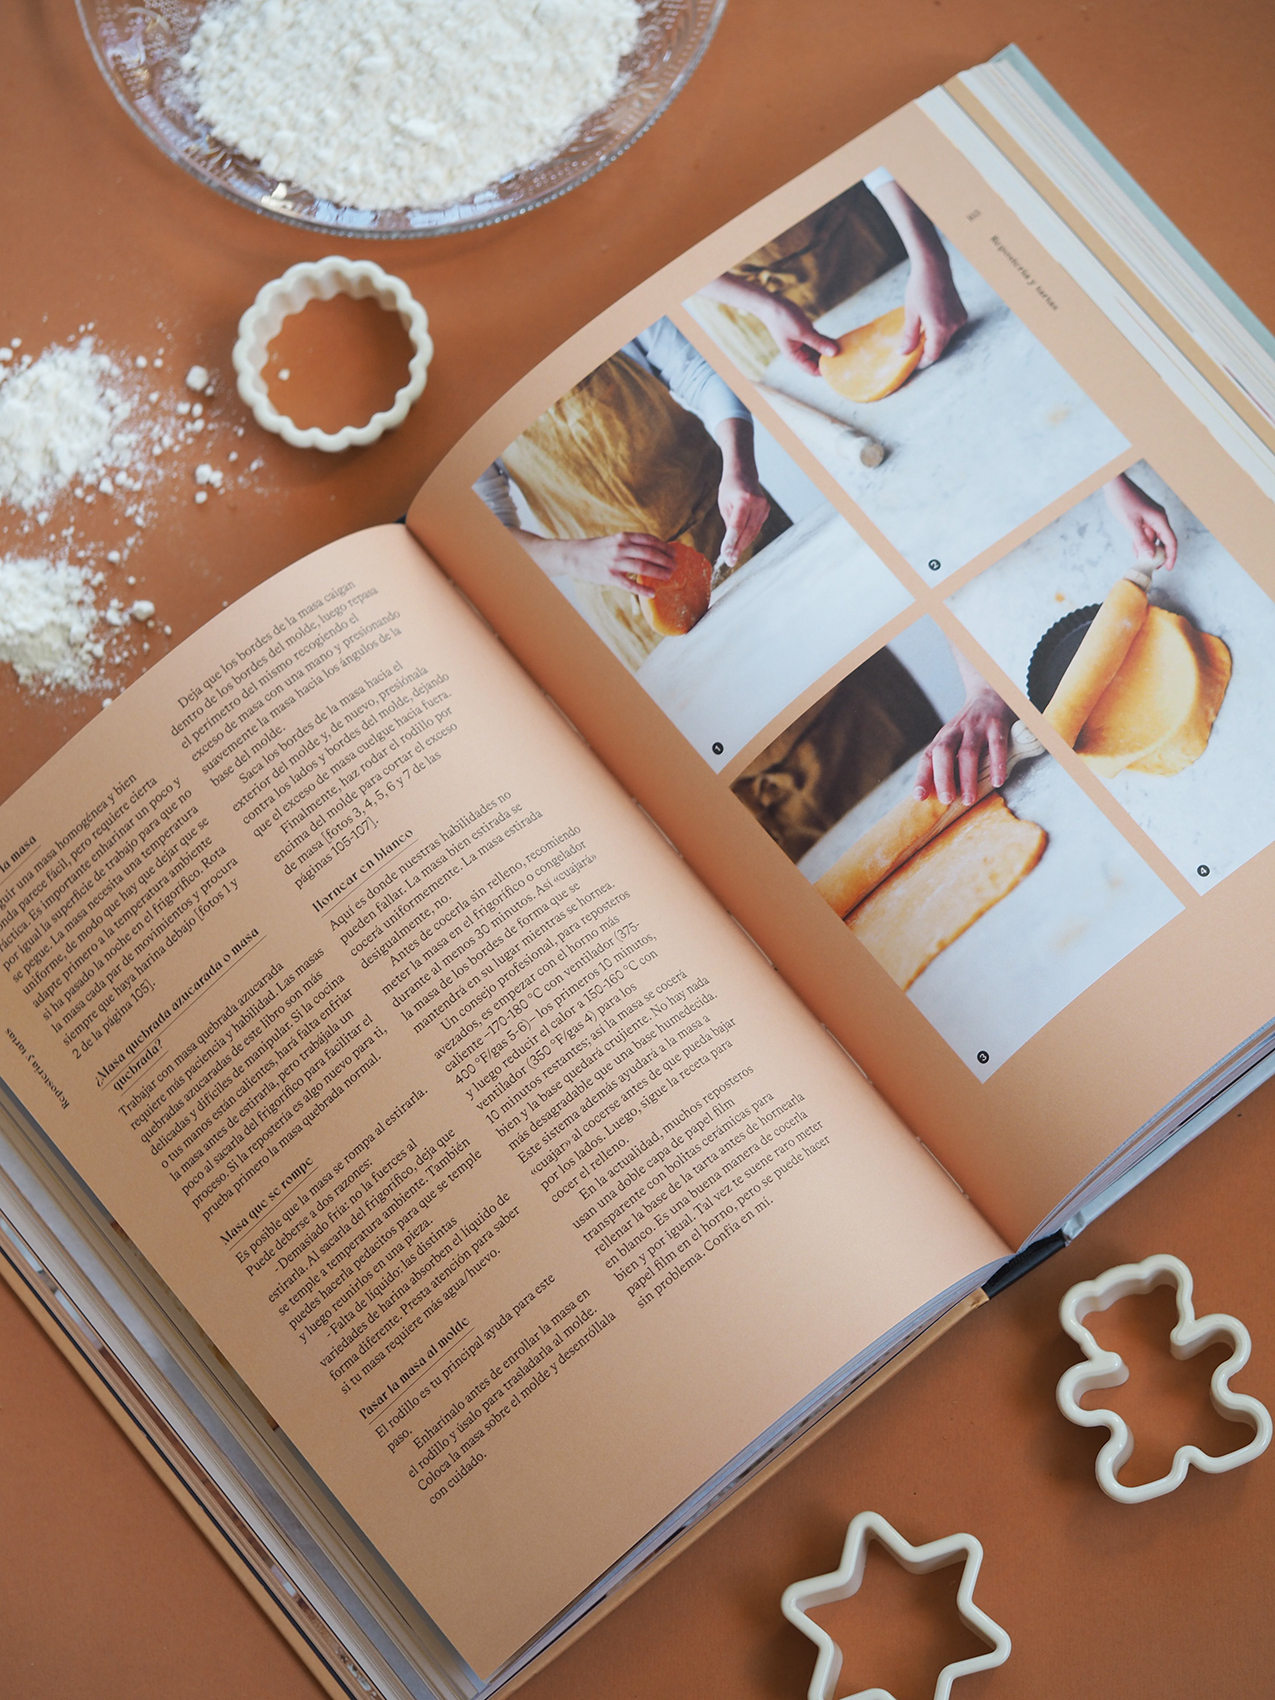 Cuaderno de recetas en blanco: Pastelería: Volume 6 (Mi cocina